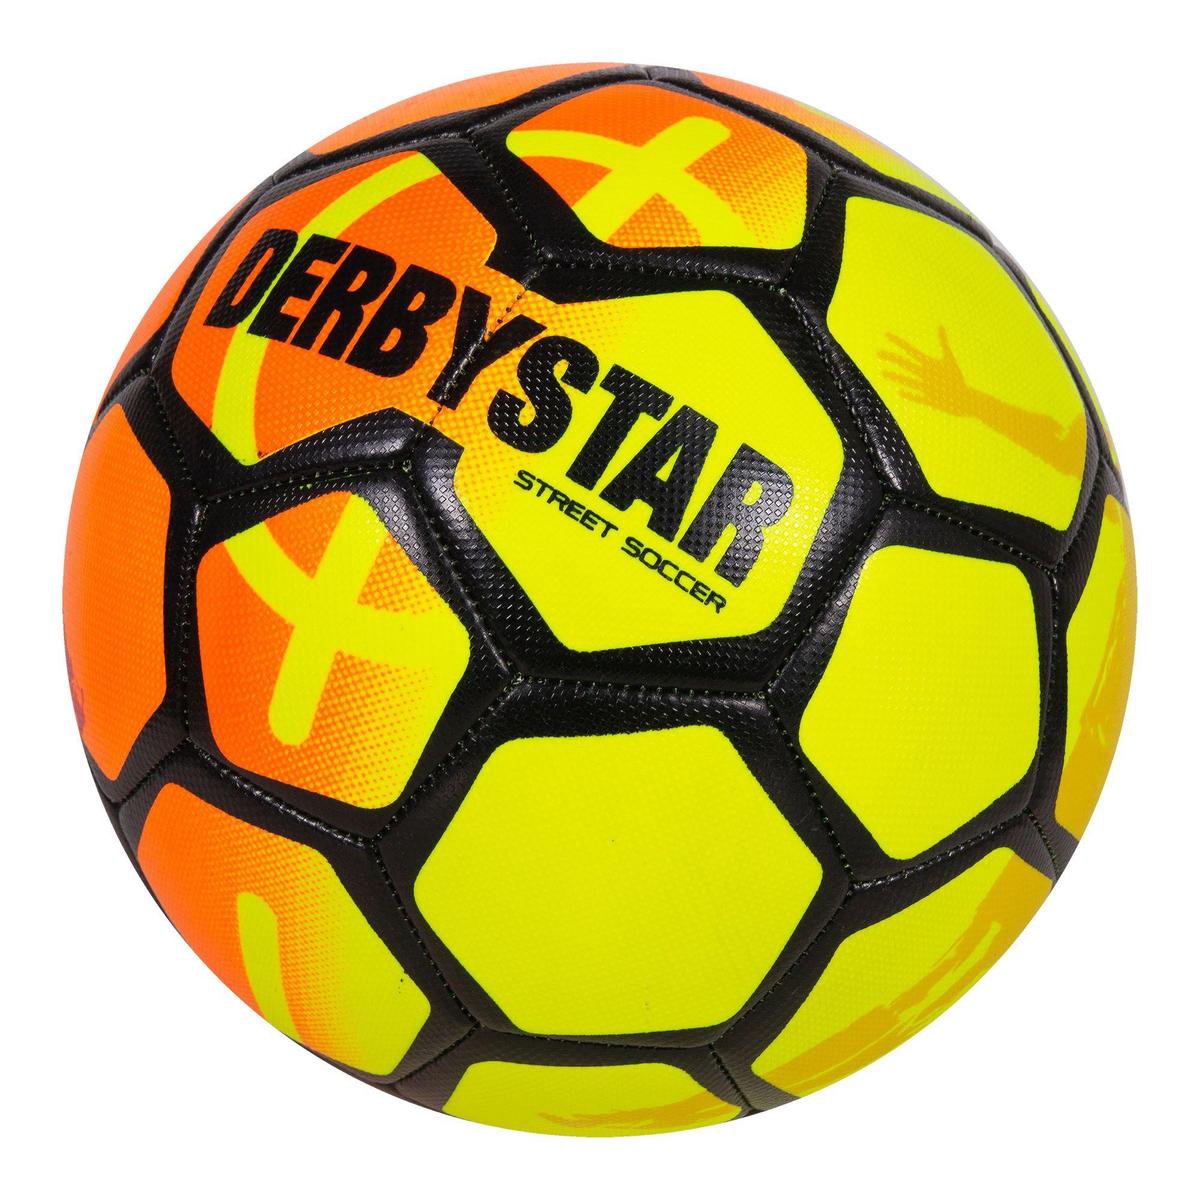 Derbystar Street Soccer Ball | bol.com